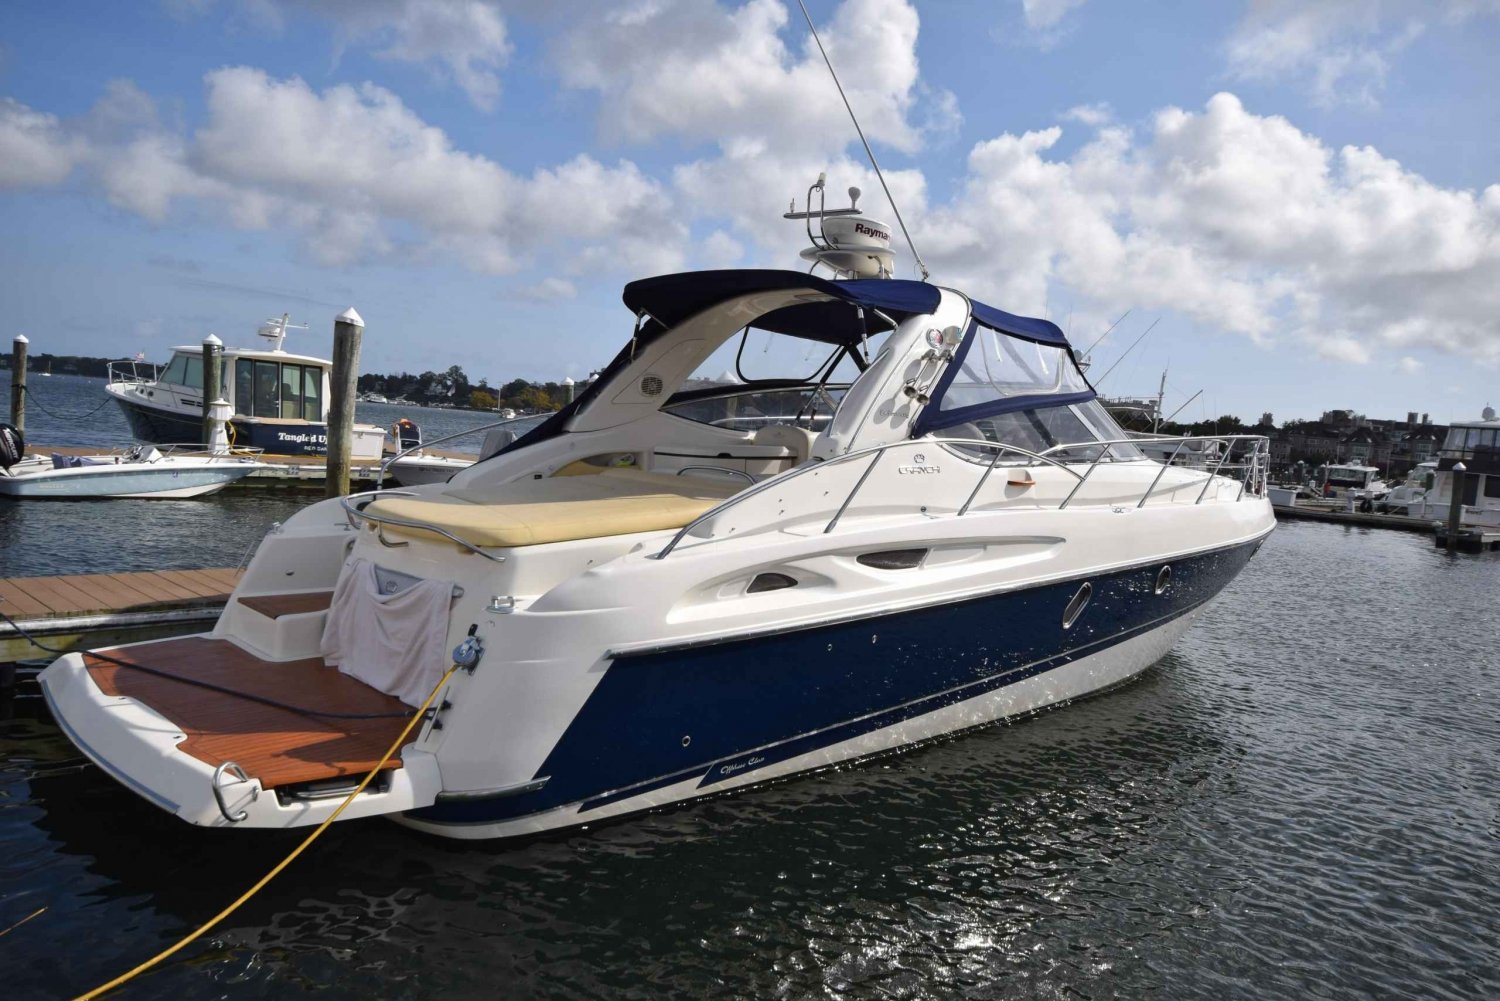 Miami: Privat yacht til op til 12 personer